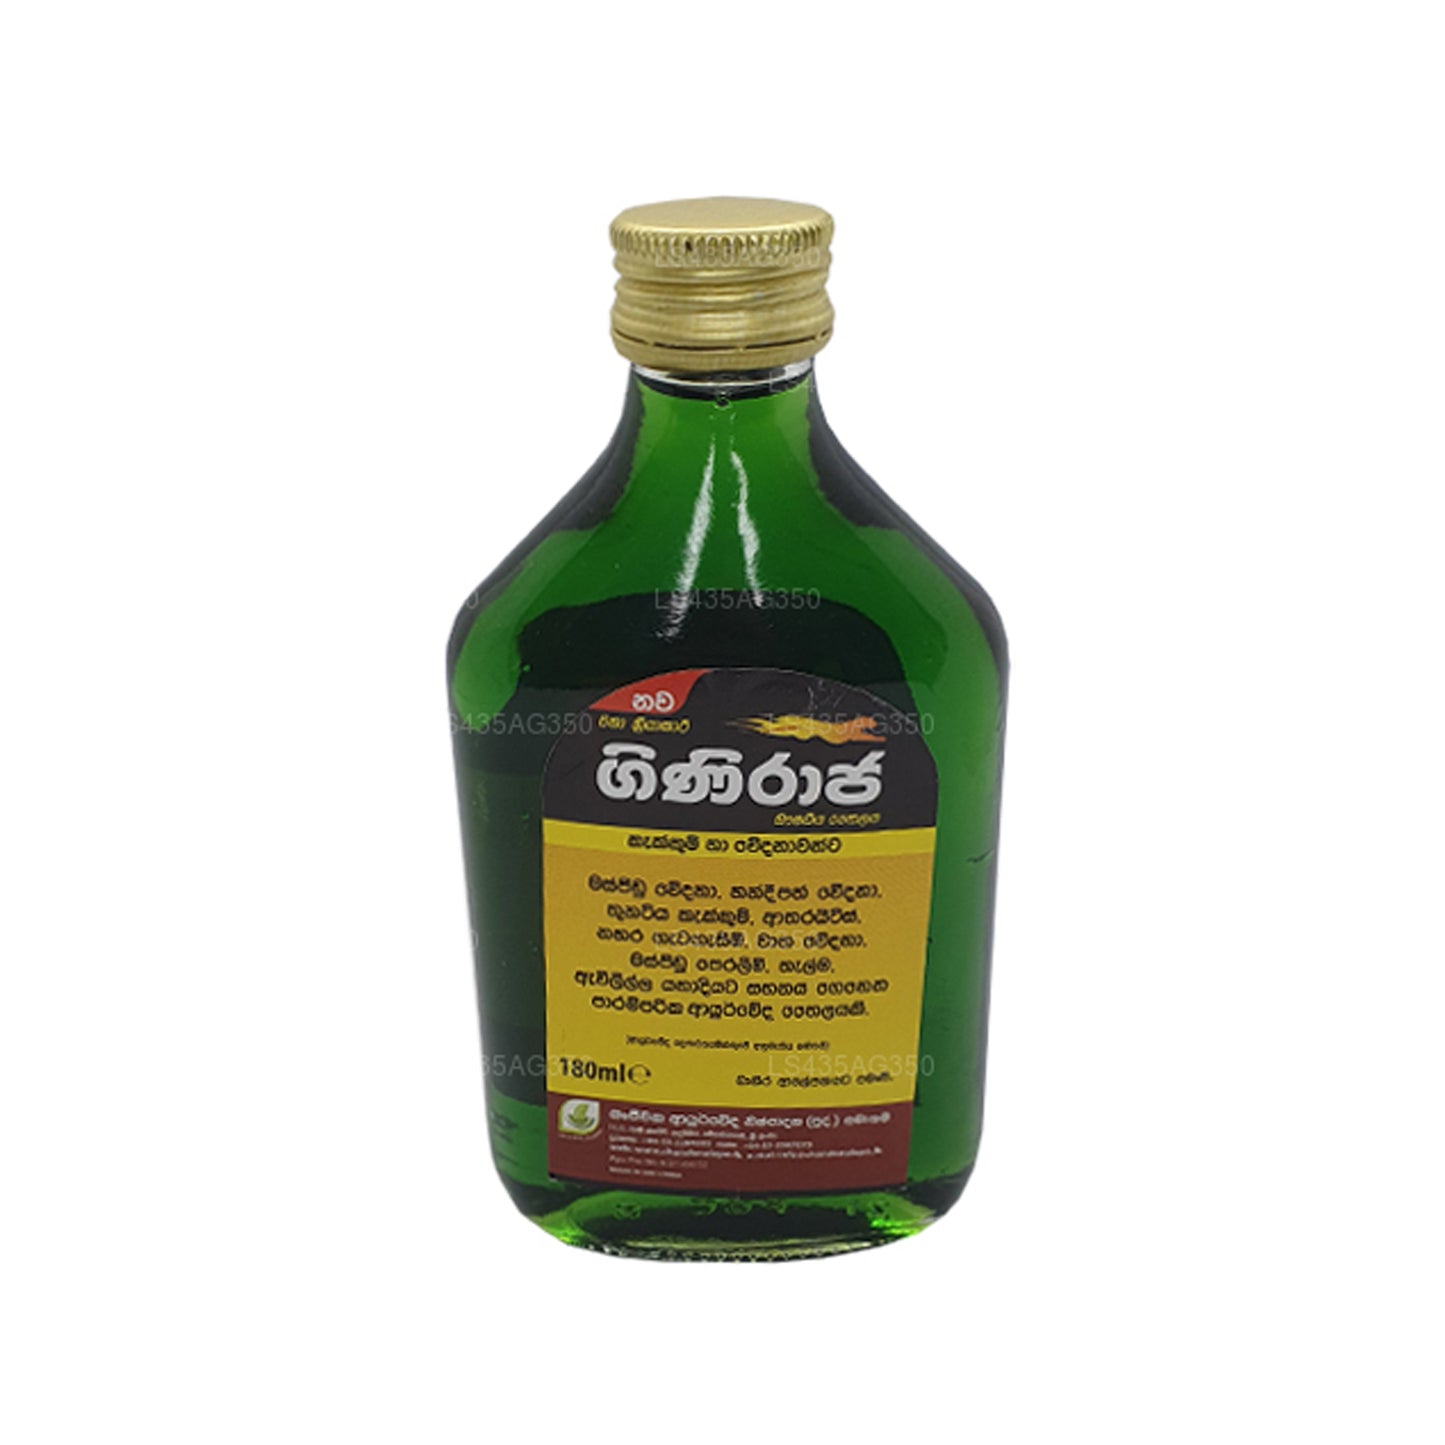 Chandanalepa Giniraja Pain Relieving Herbal Oil